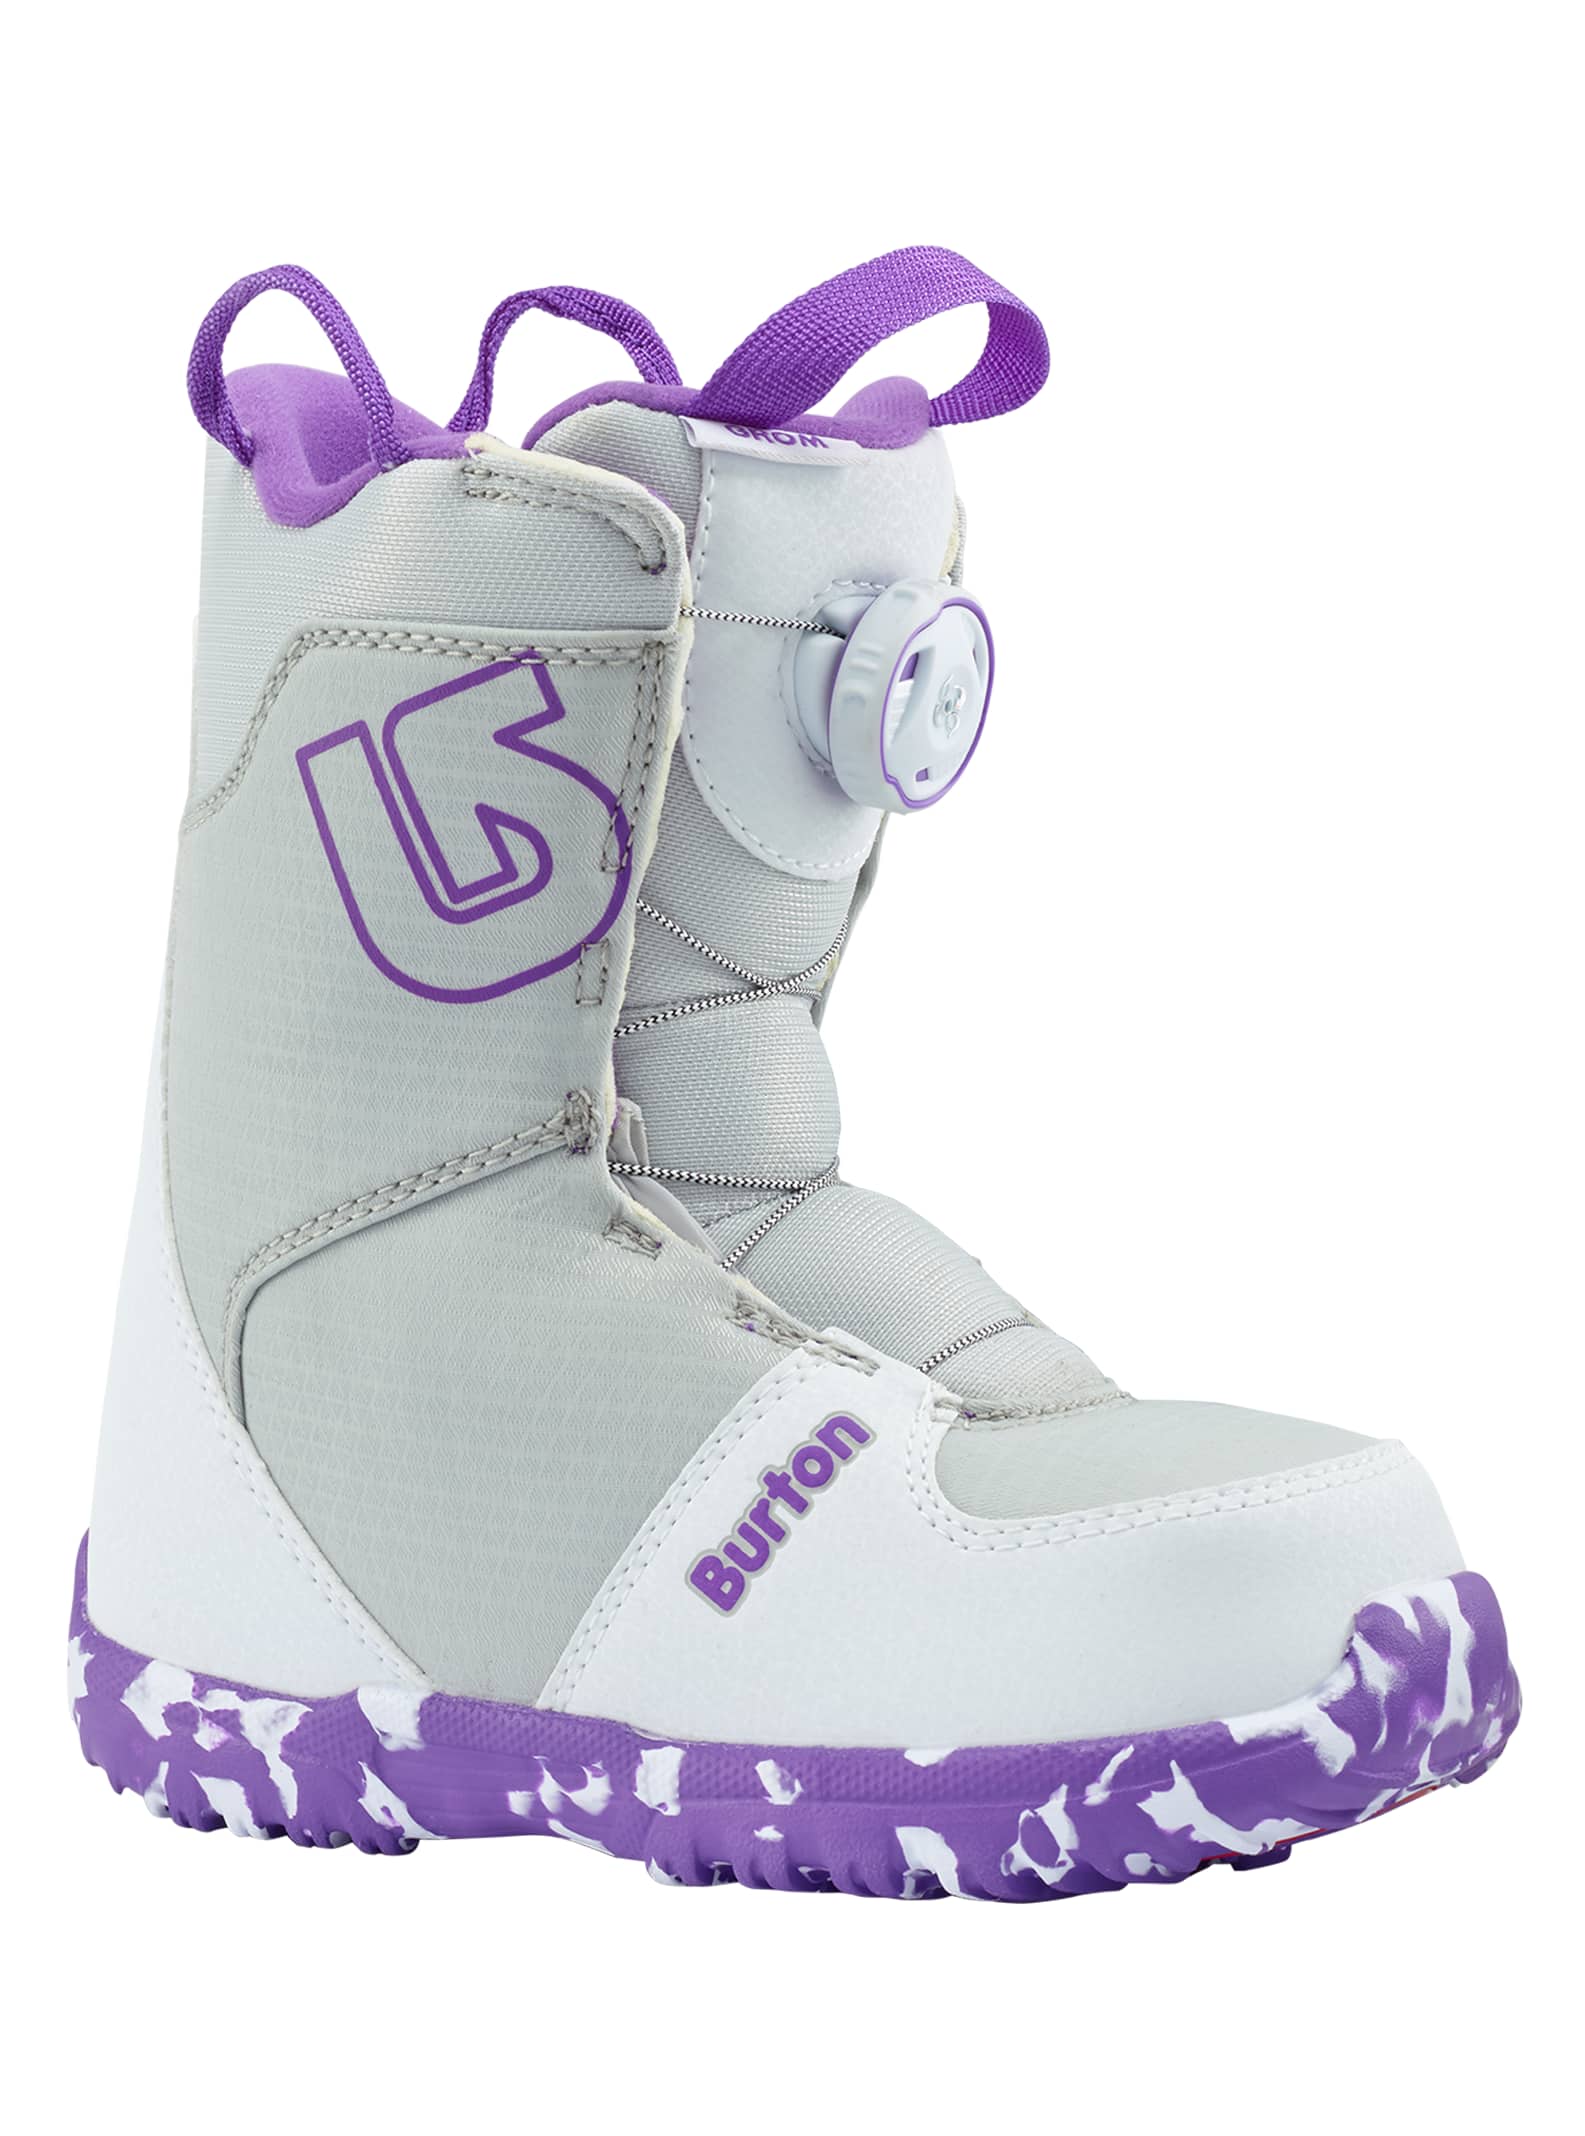 Burton - Boots de snowboard Grom Boa®, White / Purple, 2K